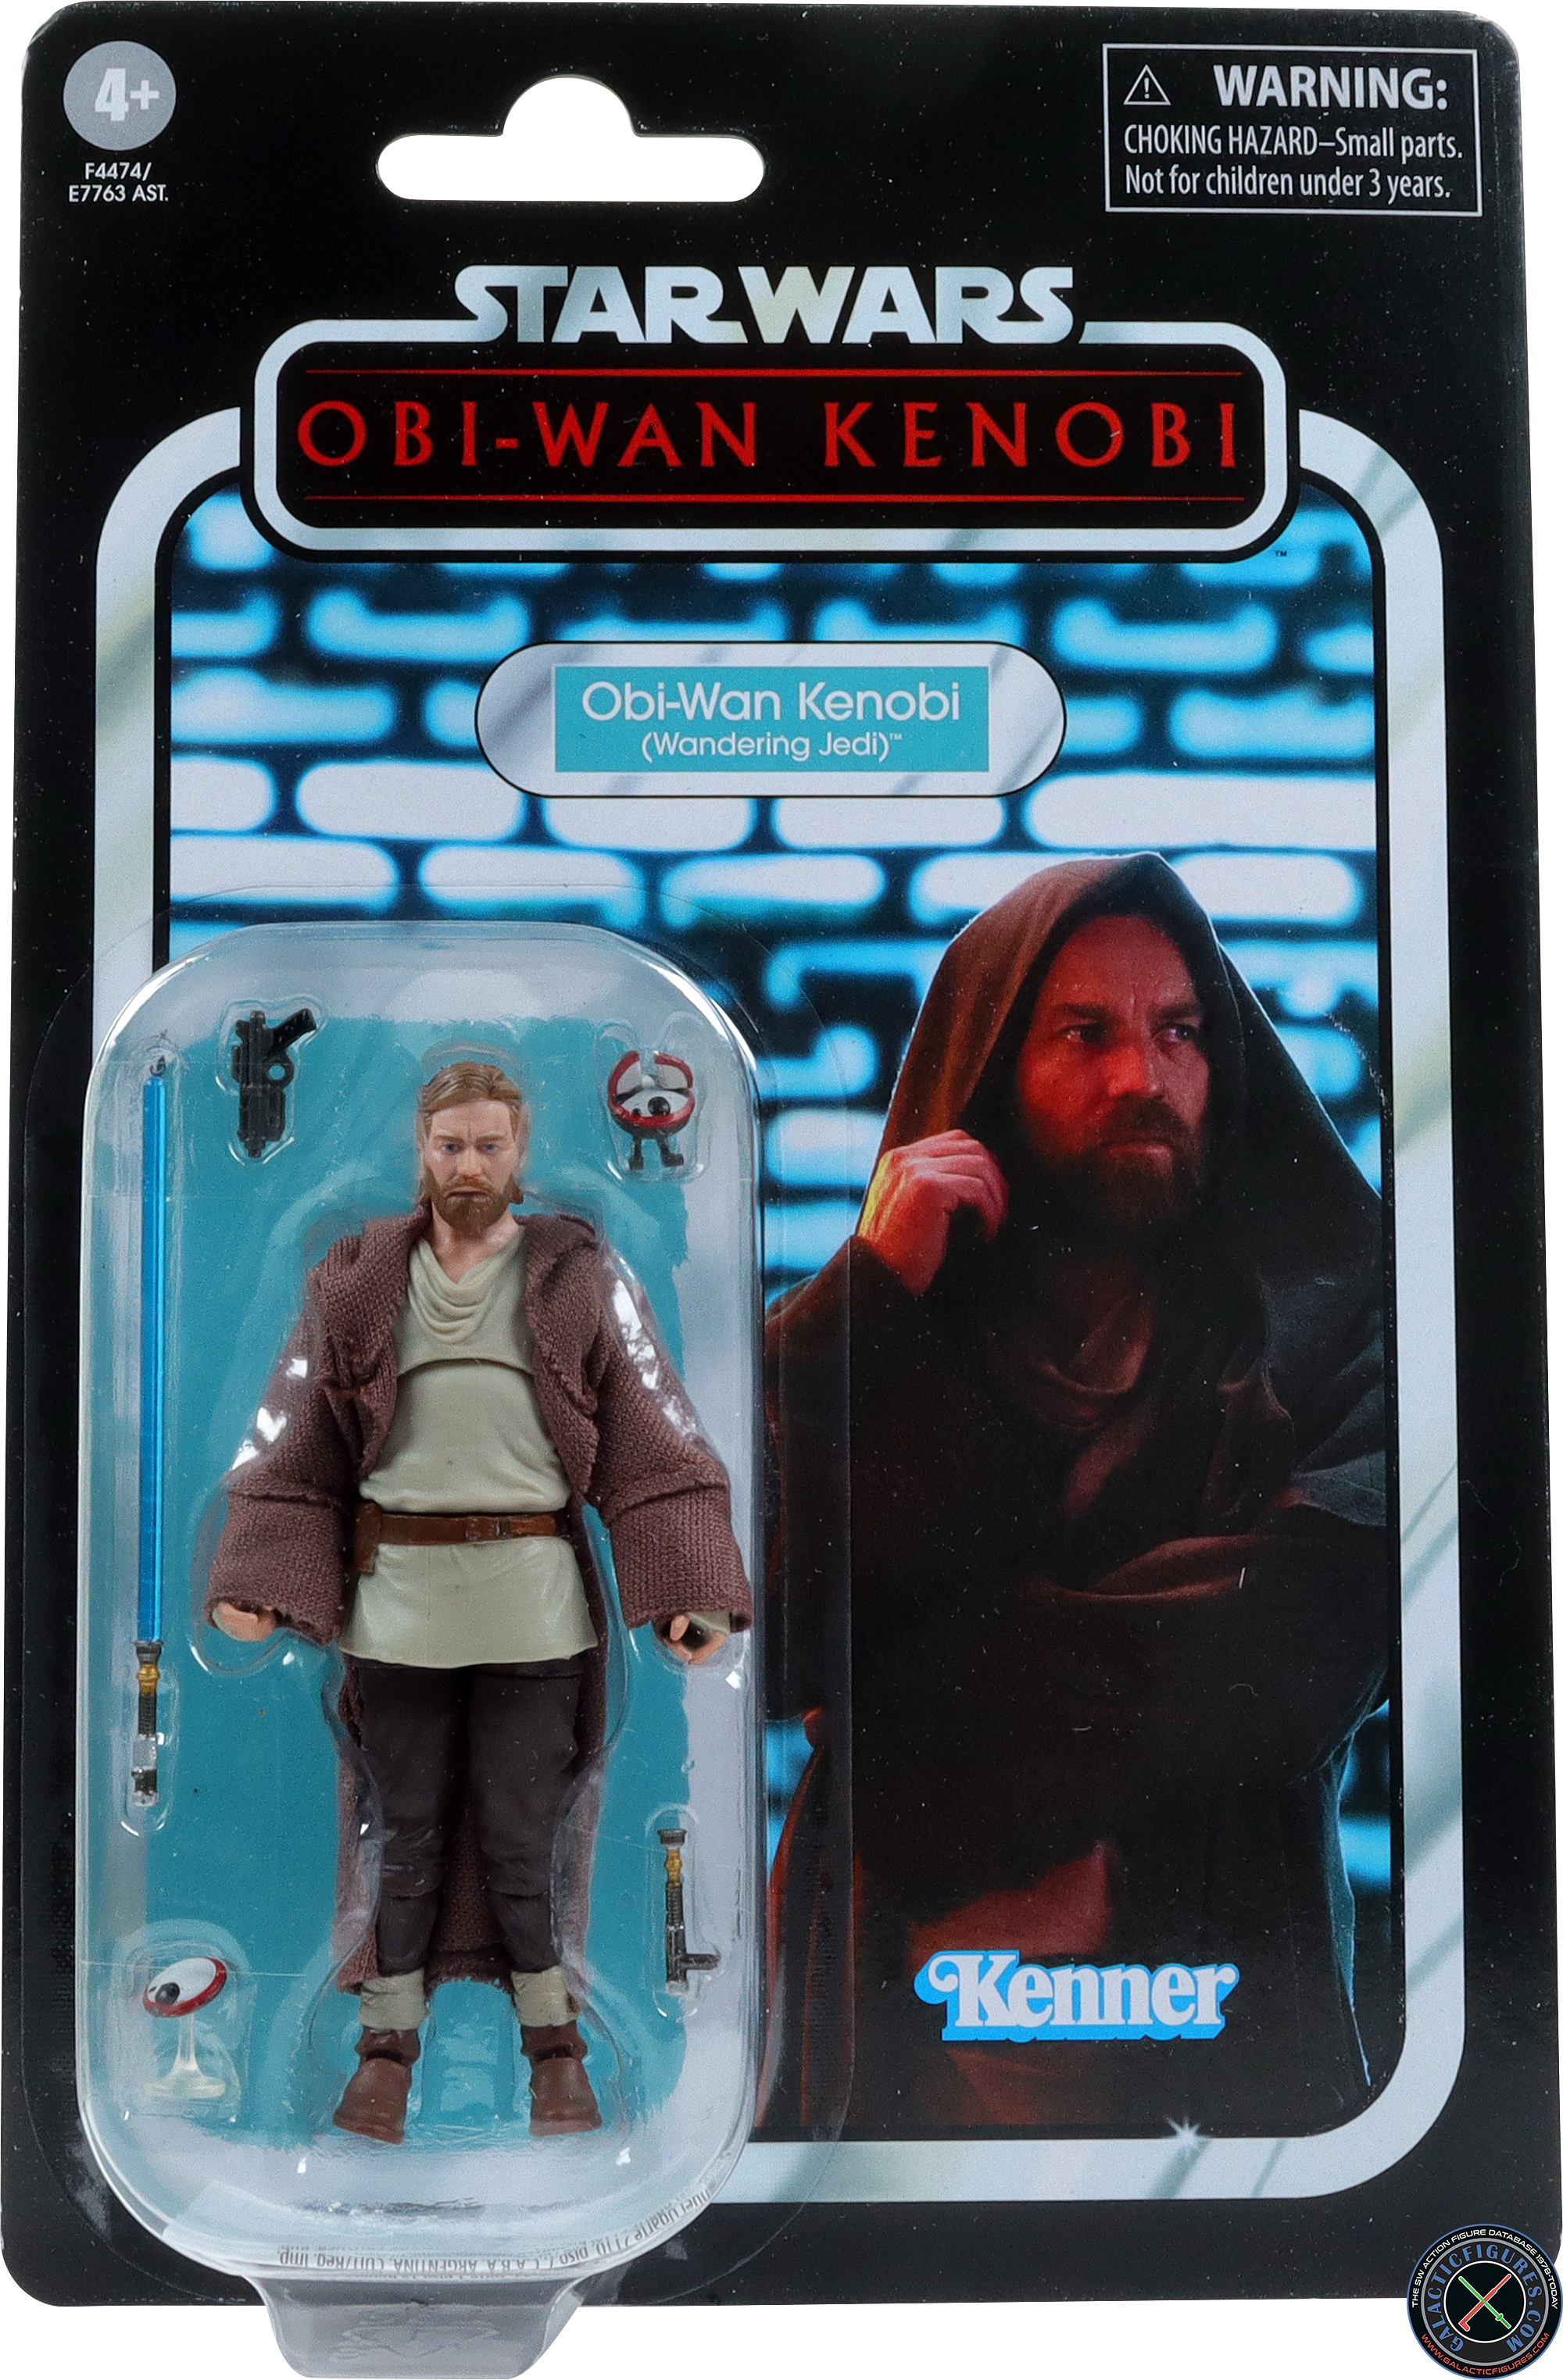 L0-LA59 With Obi-Wan Kenobi (Wandering Jedi)